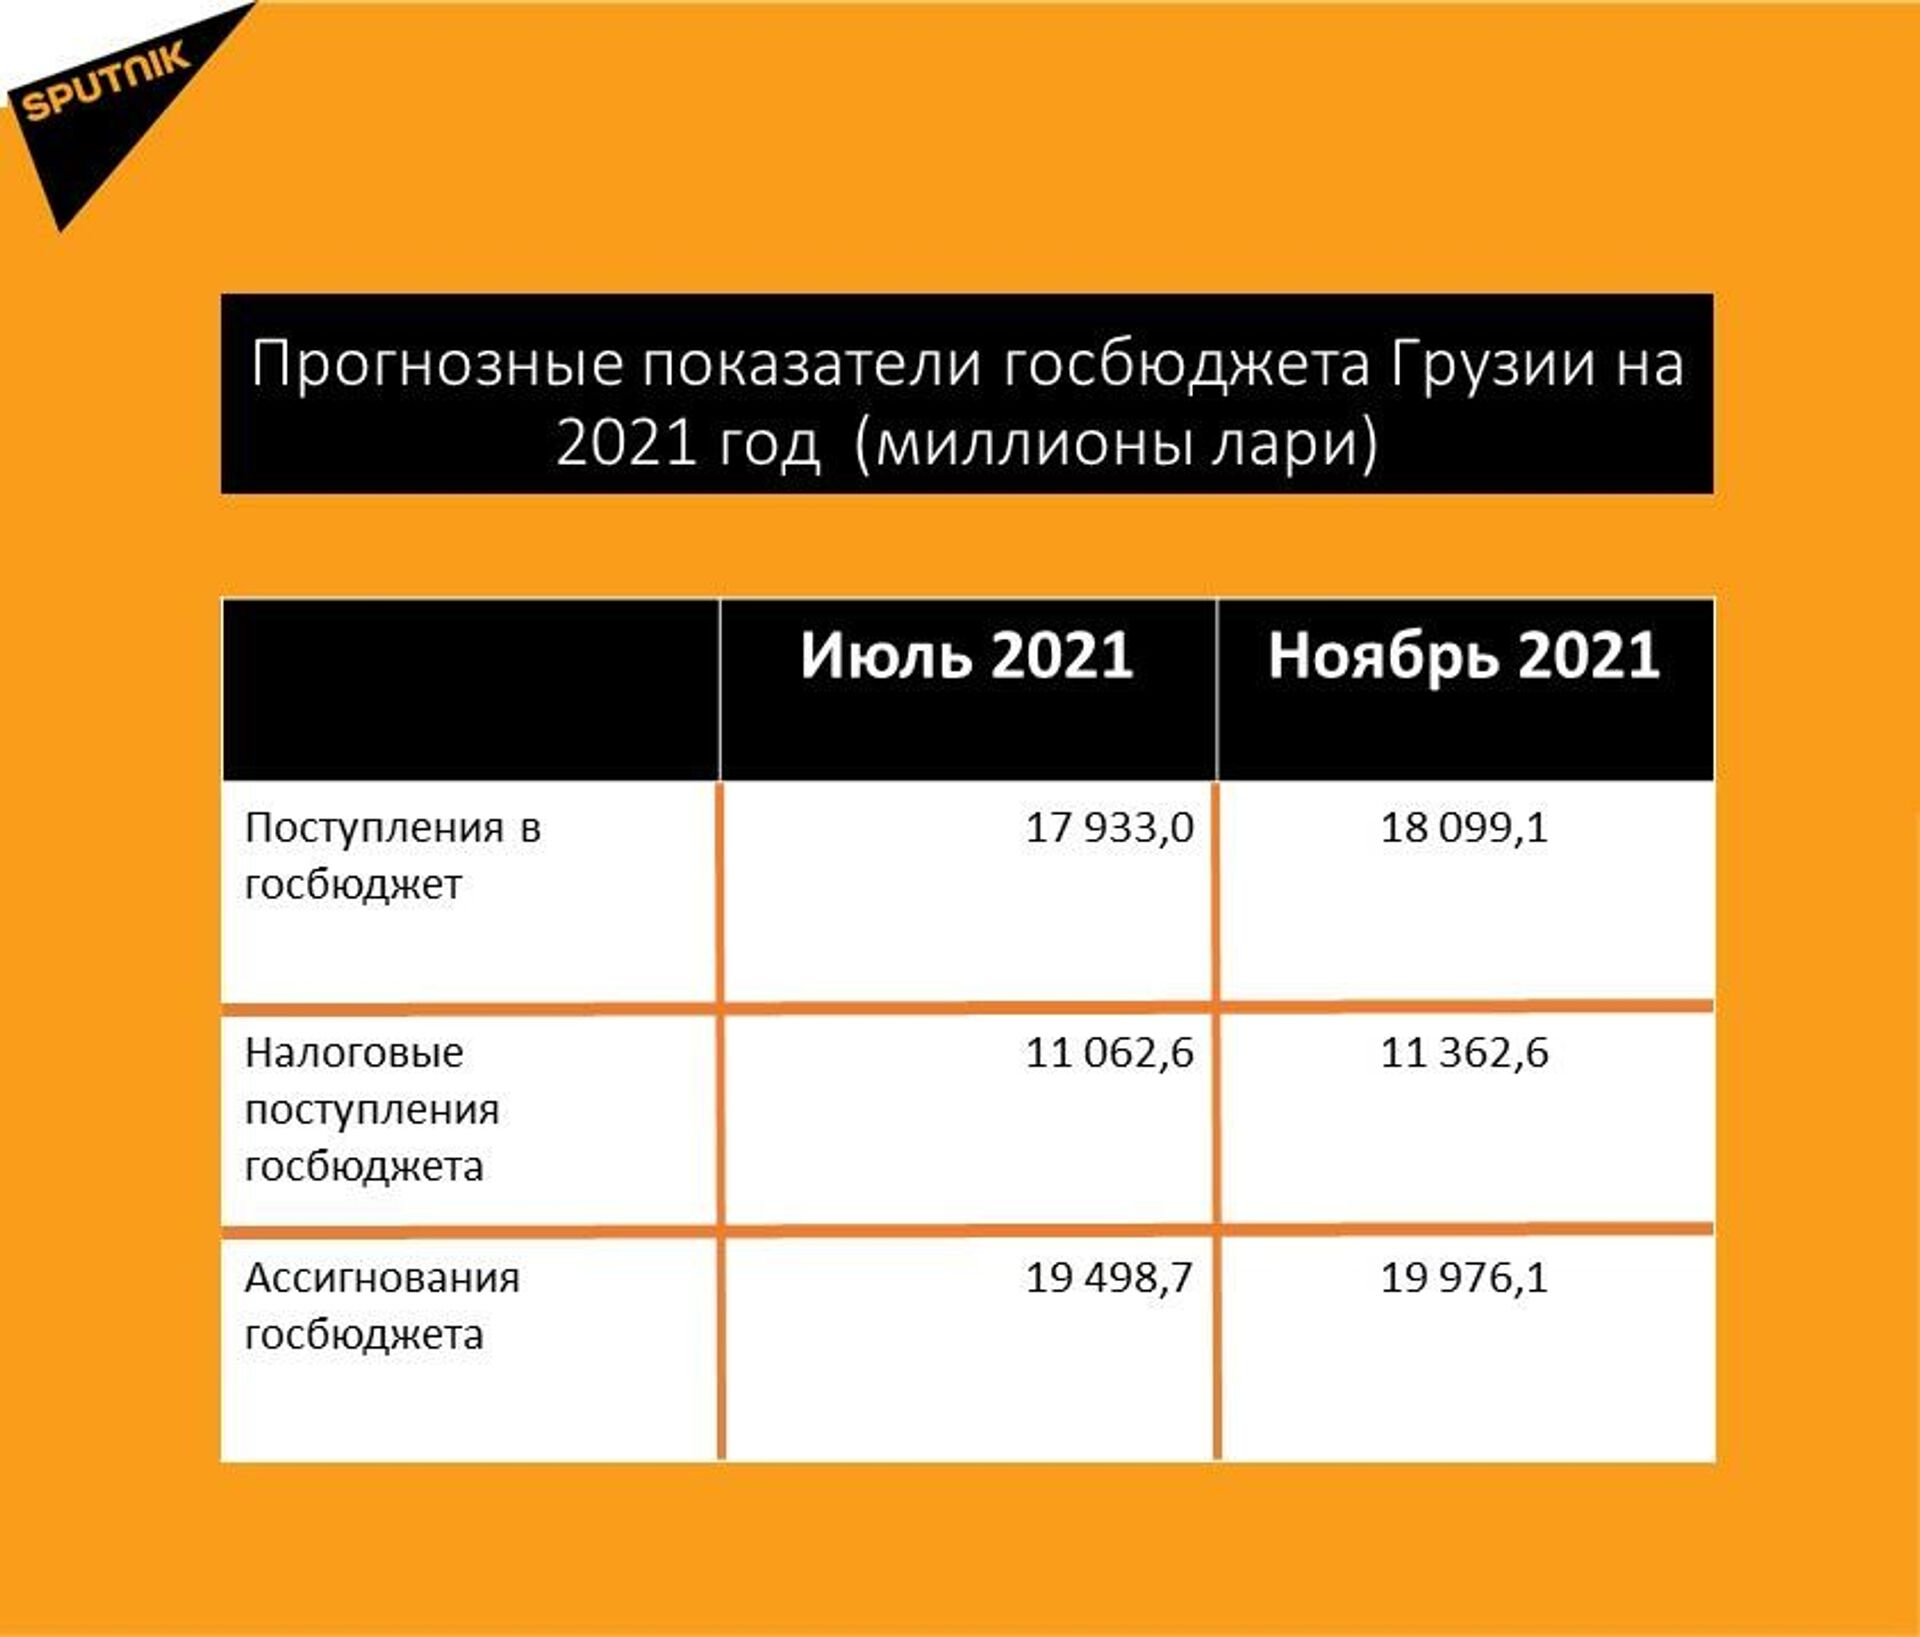 Прогнозные показатели госбюджета Грузии на 2021 год после изменений - Sputnik Грузия, 1920, 02.12.2021